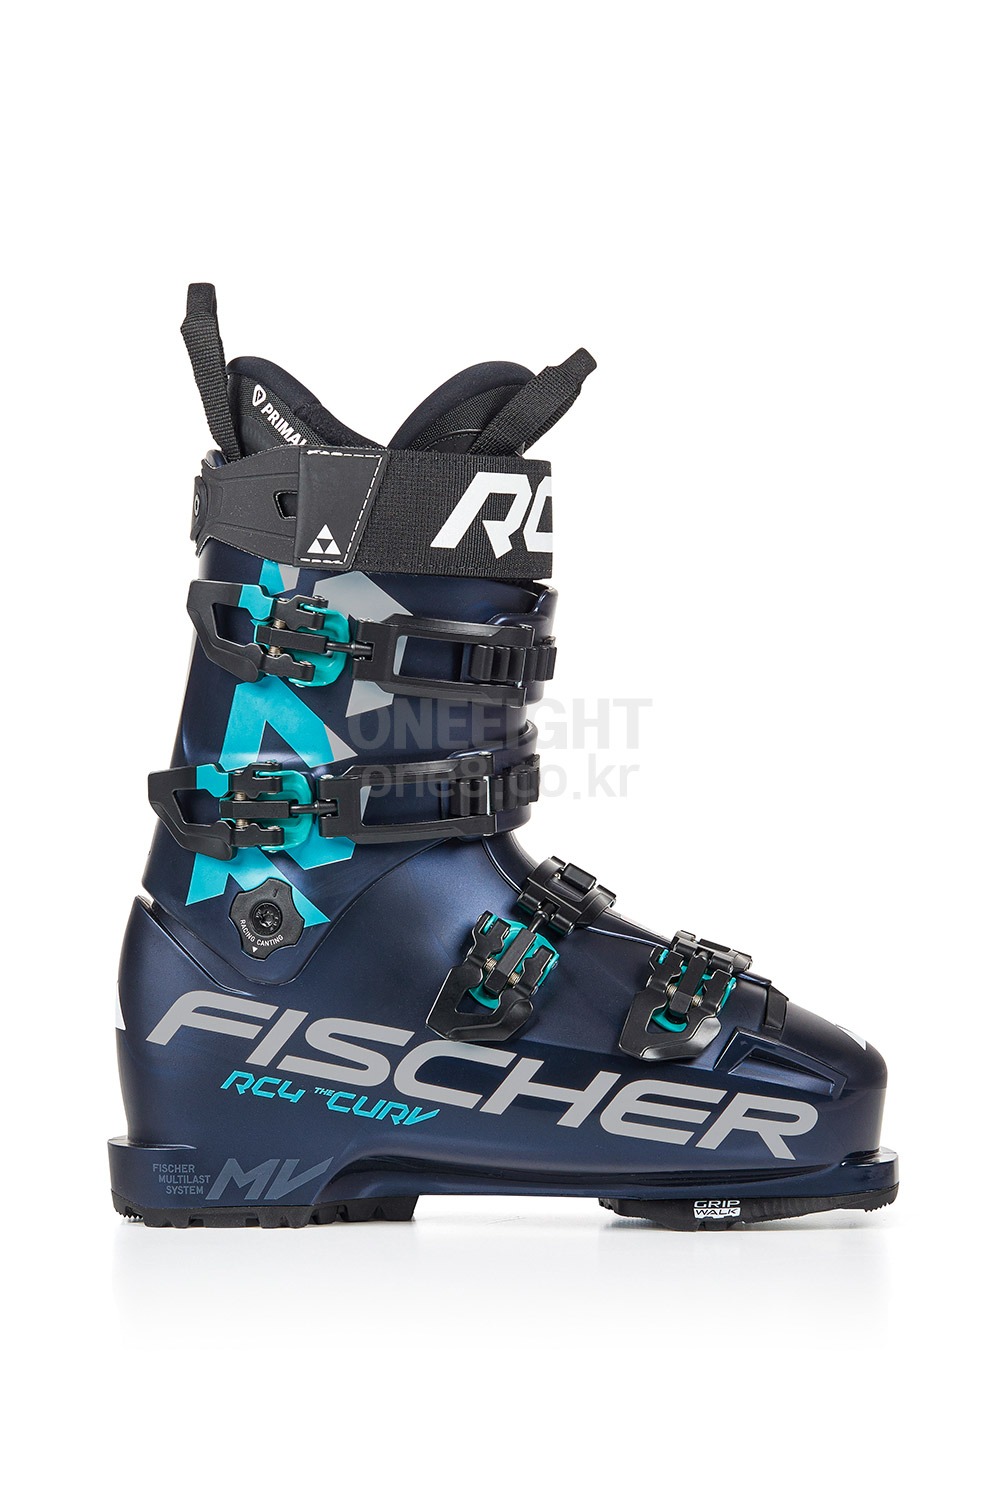 피셔 여성 스키부츠 RC4 더 커브 105버큠워크 2021 FISCHER WMS RC4 THE CURV 105 VACUUM WALK_BLUE/BLUE_플렉스 : 105 / 라스트 : 93_B6F4004BU